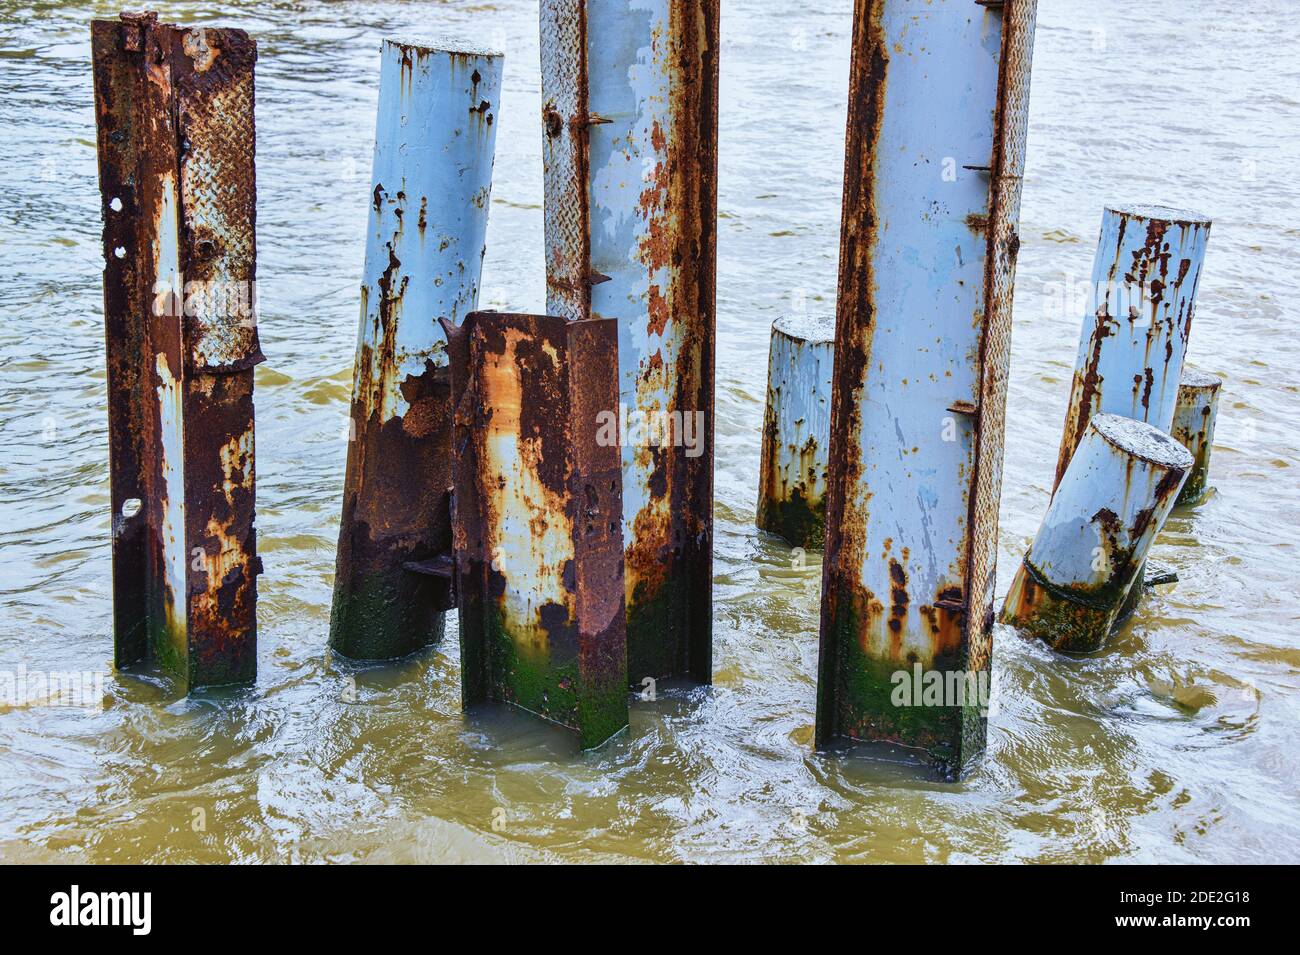 ‘sWasser: Das Wasser, die rostigen und hölzernen Pole symbolisieren die verzweifelte Notlage nach „Survival“, die wir alle in diesen turbulenten Zeiten erleben. Stockfoto